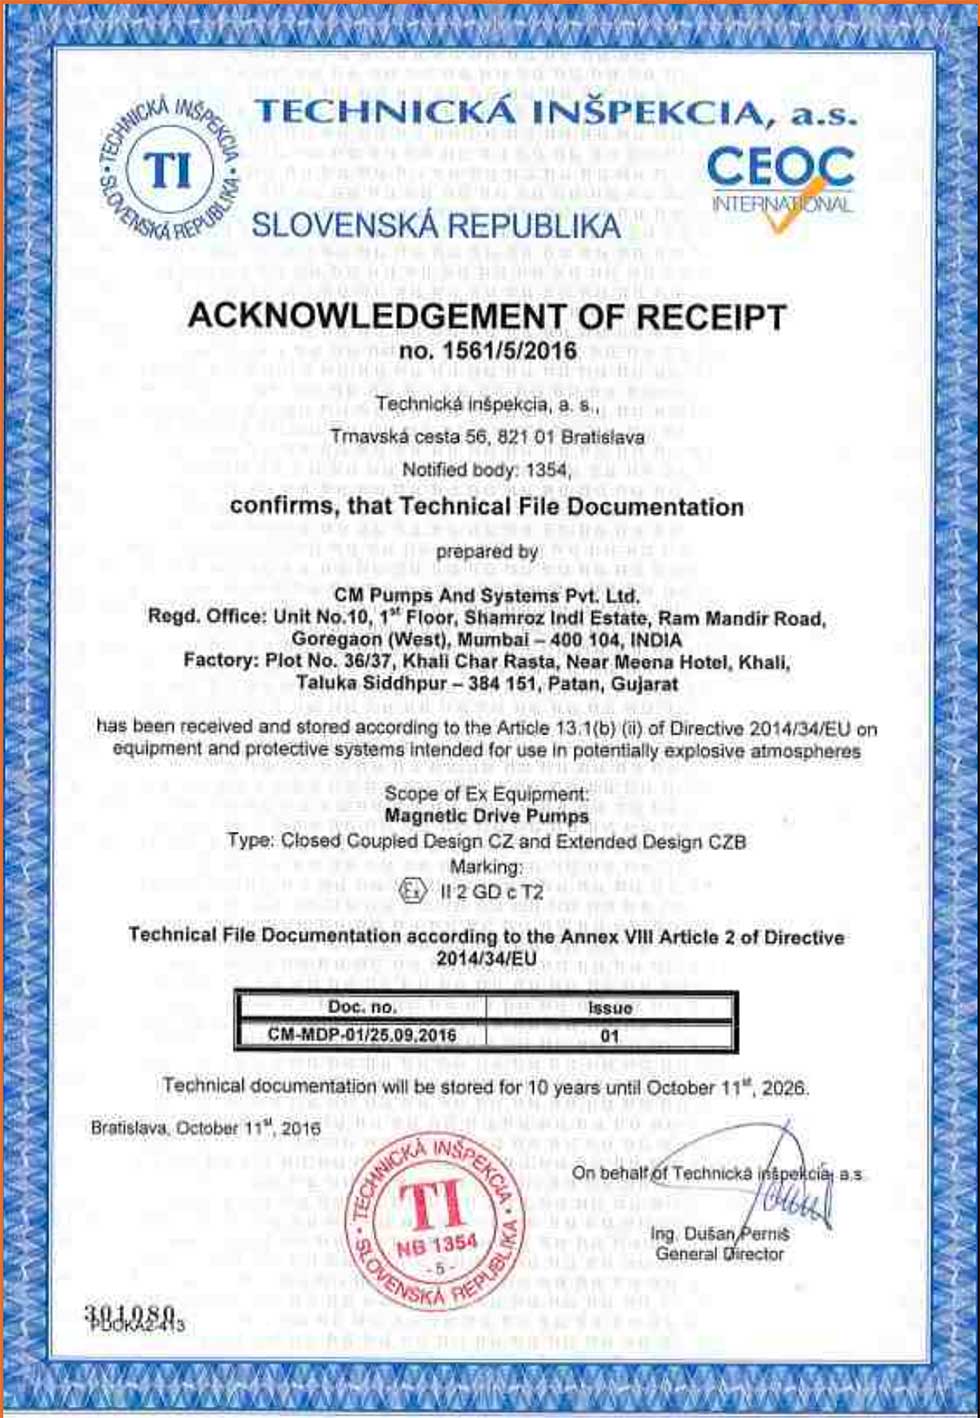 atex-certificate